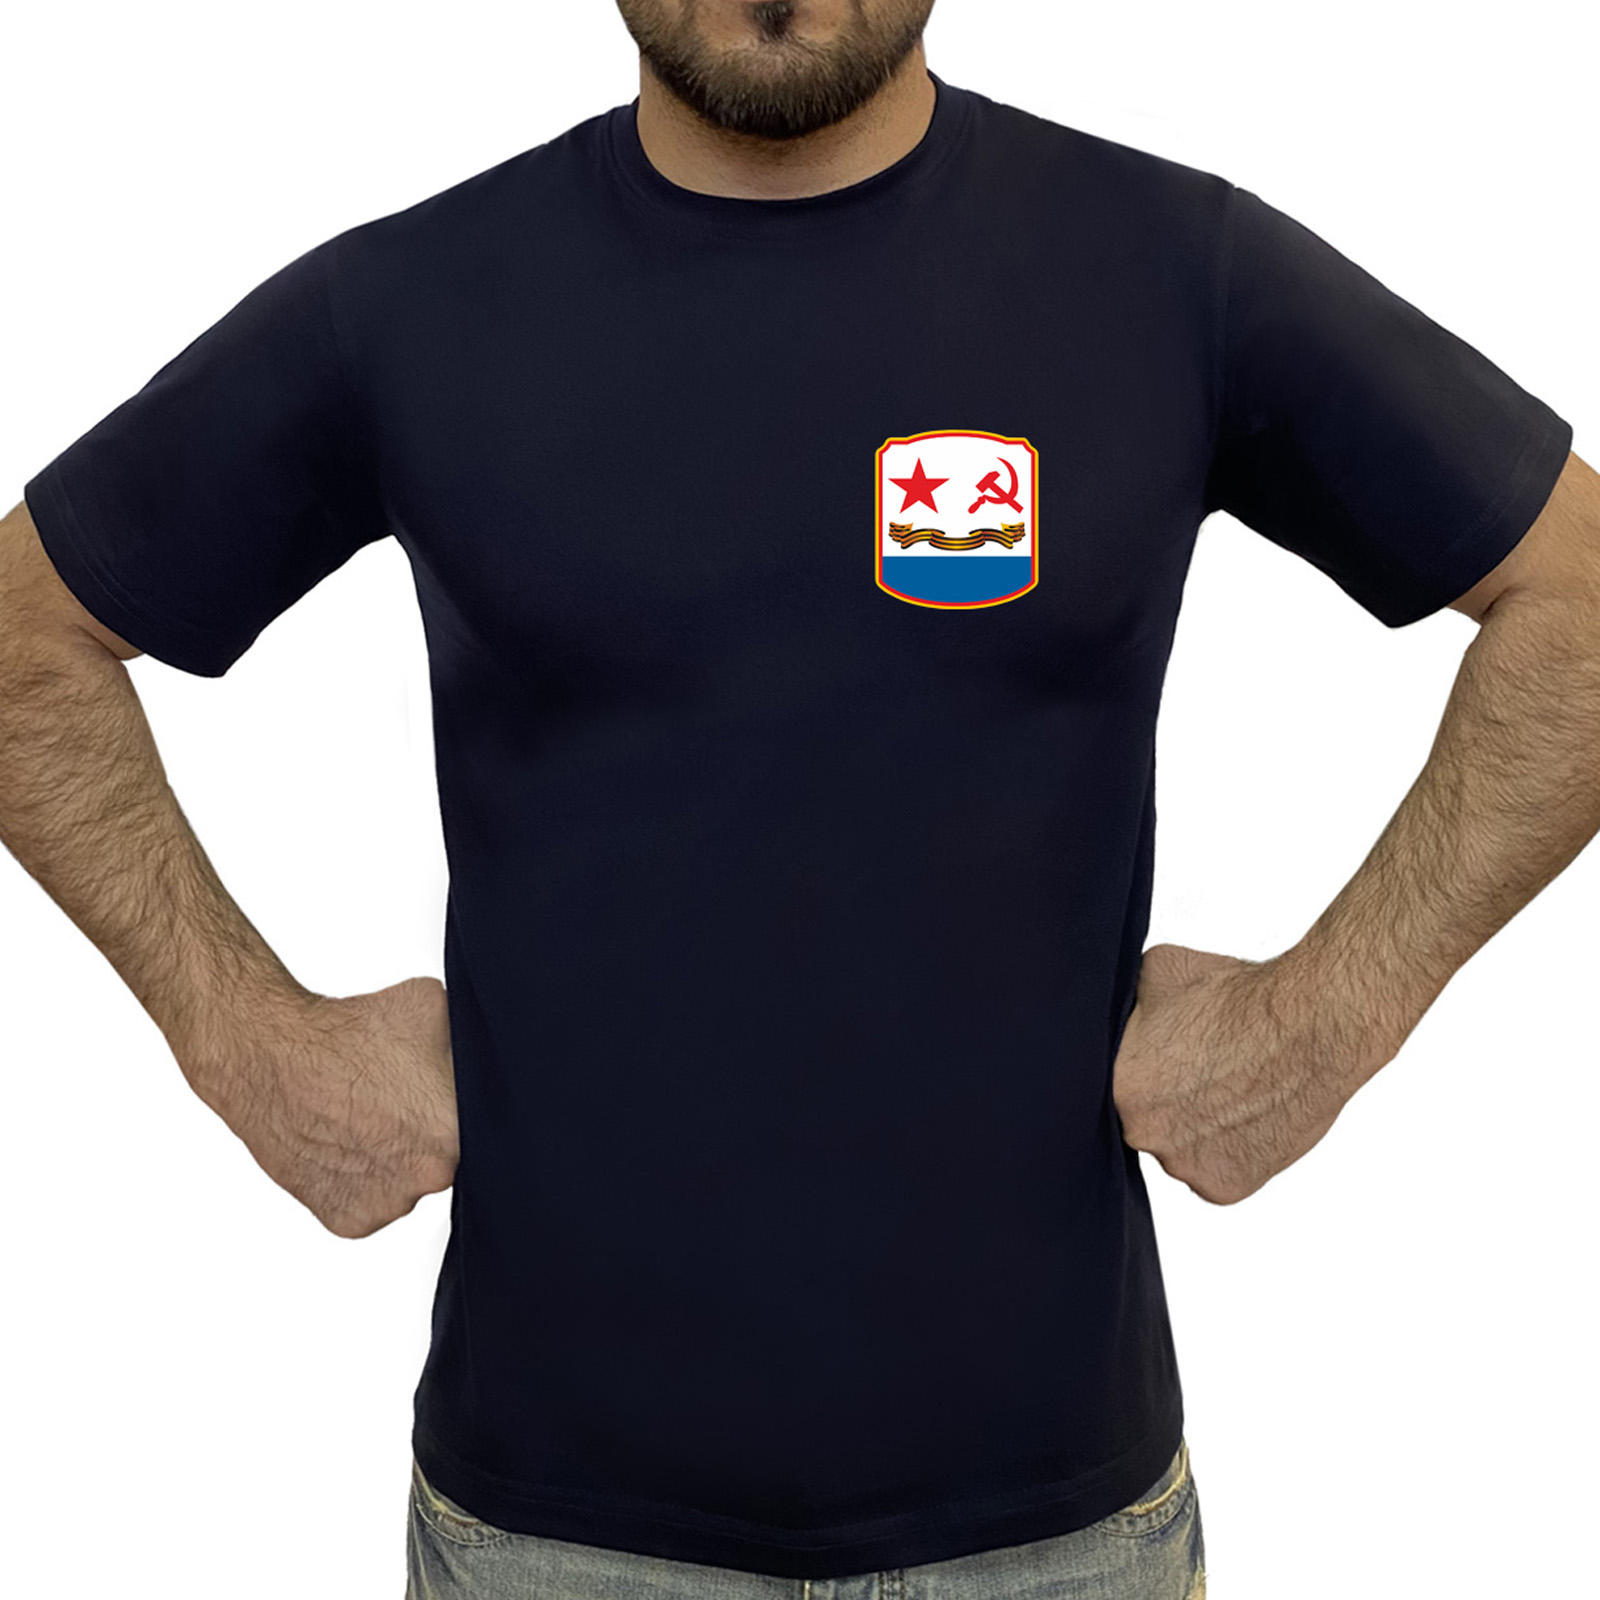 Недорогая мужская футболка с флагом ВМФ СССР